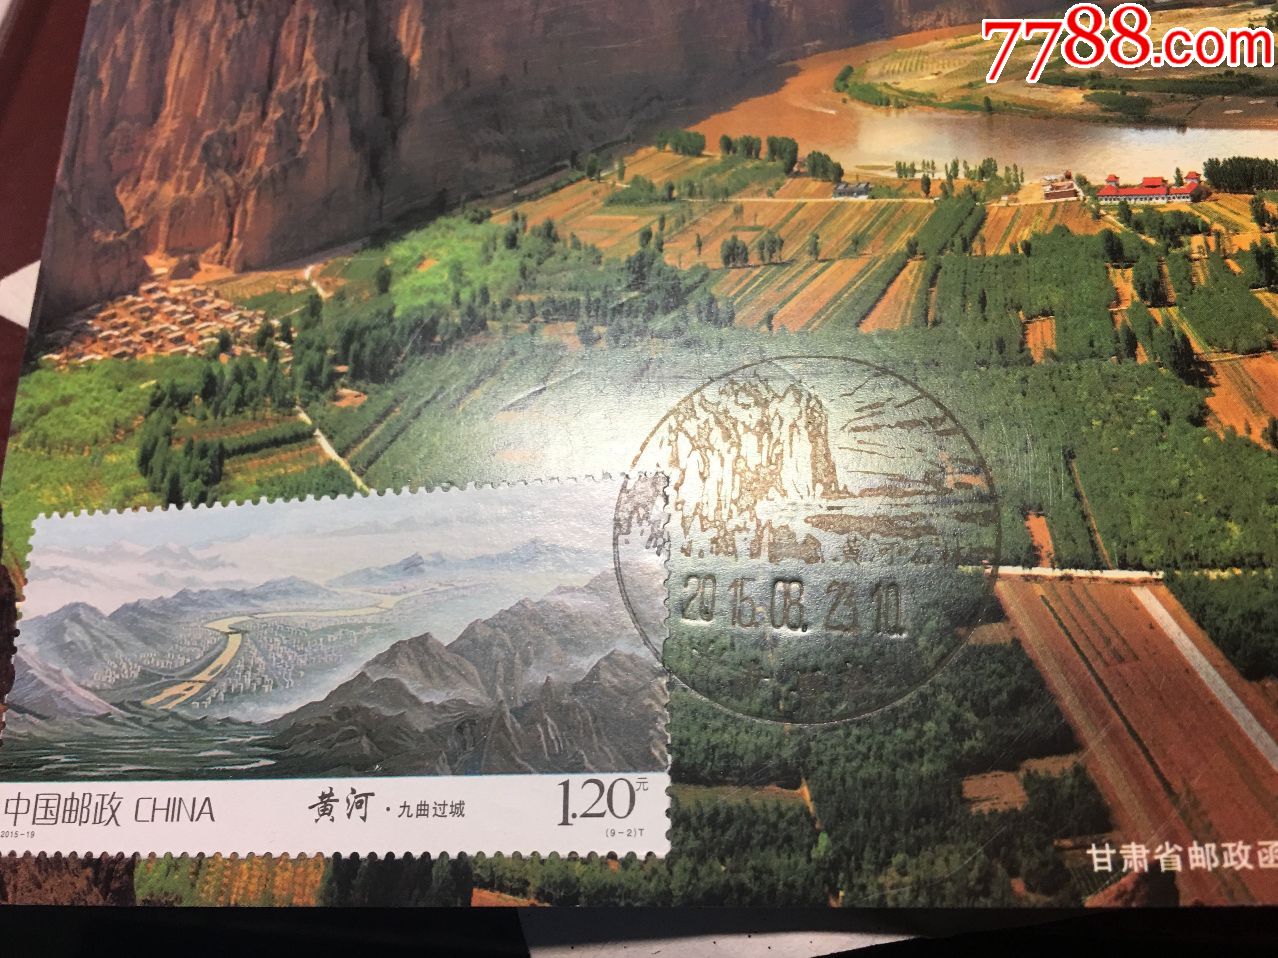 2015年8月23日黄河九曲过城邮票甘肃景泰黄河石林风景